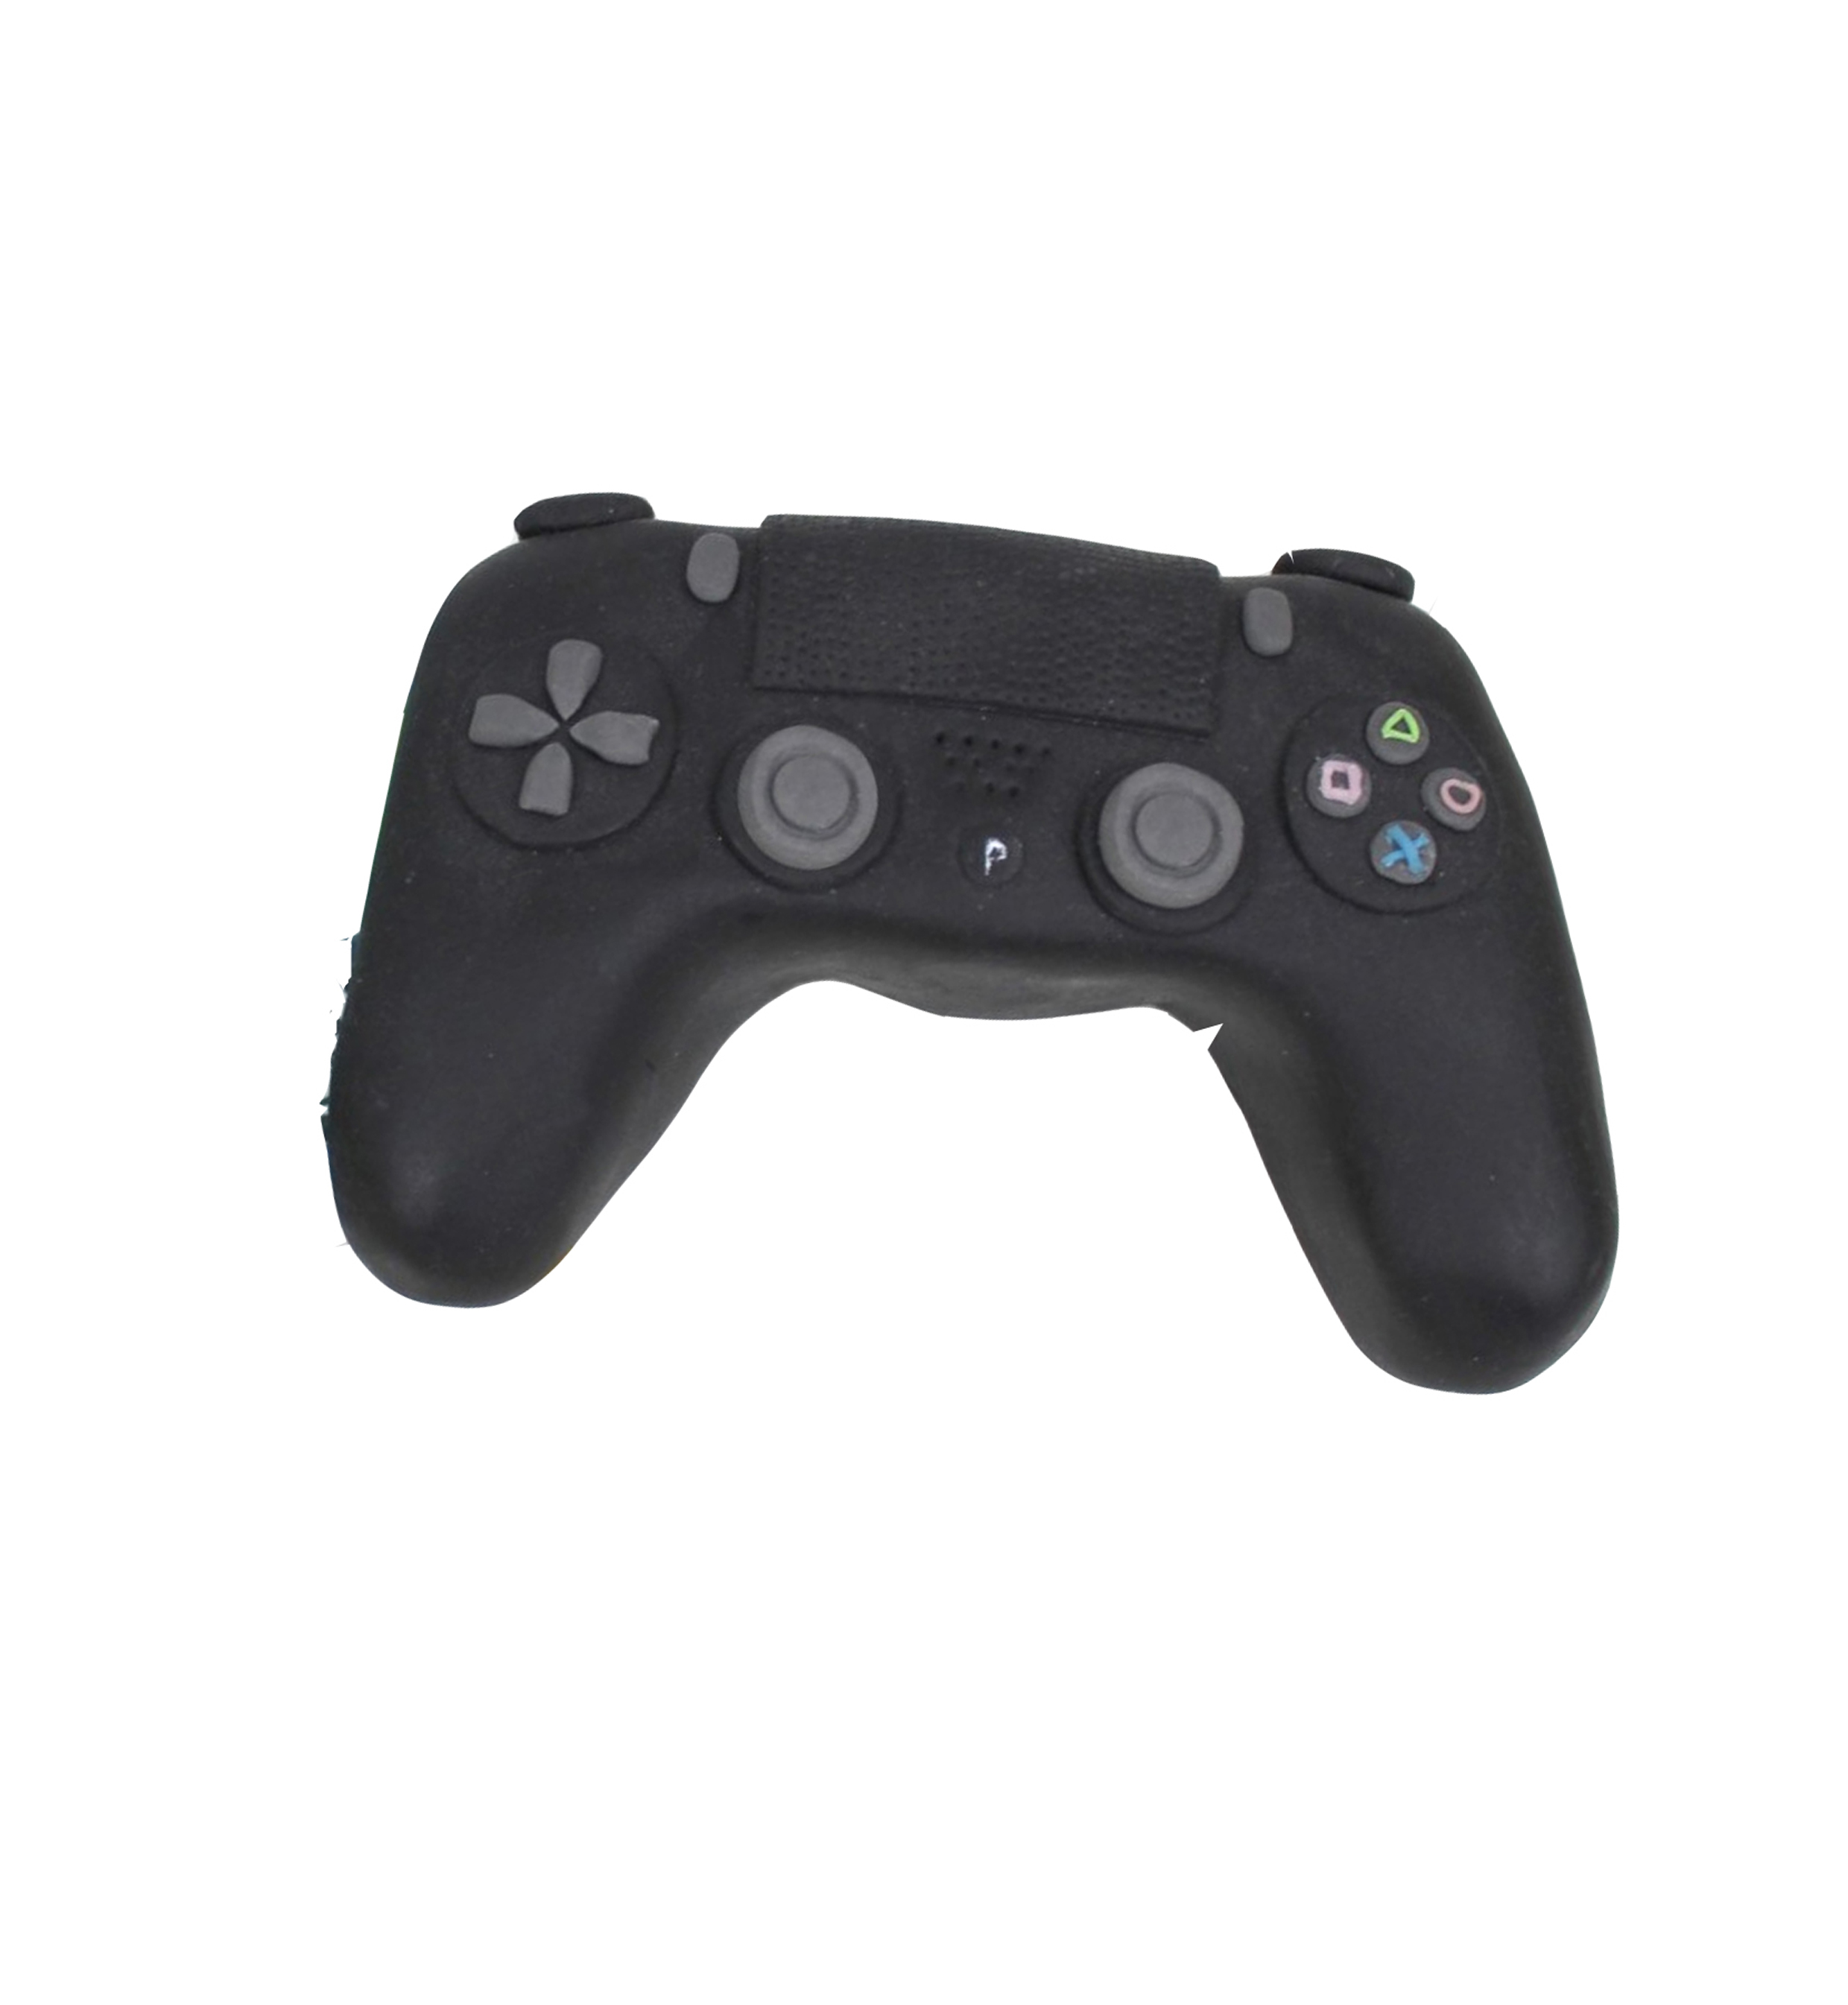 PS4 Controller handmodelliert